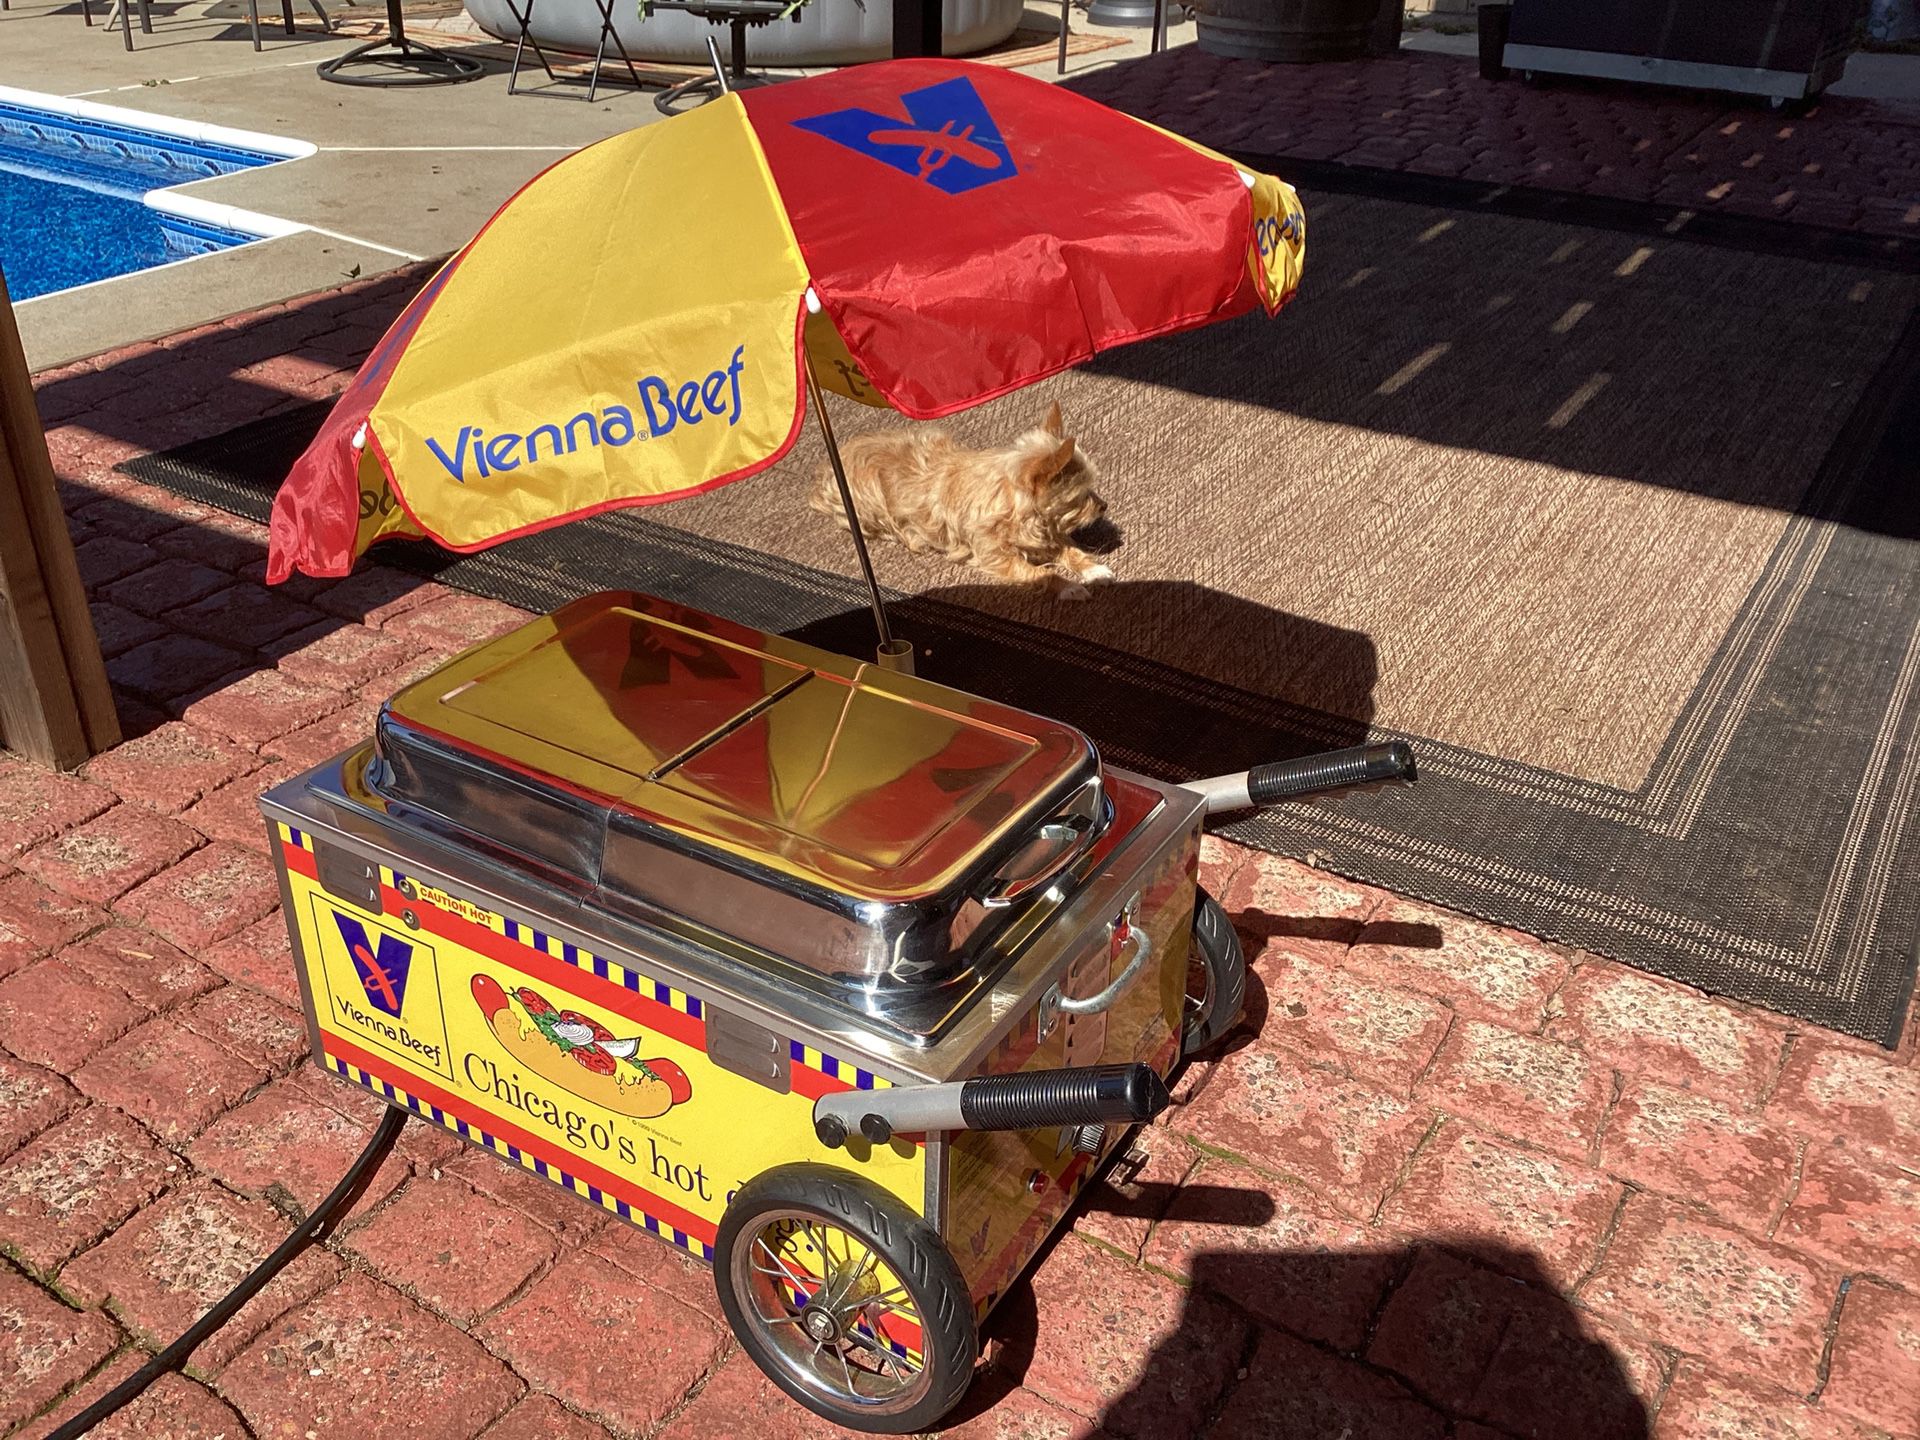 Hot Dog Steamer Cart